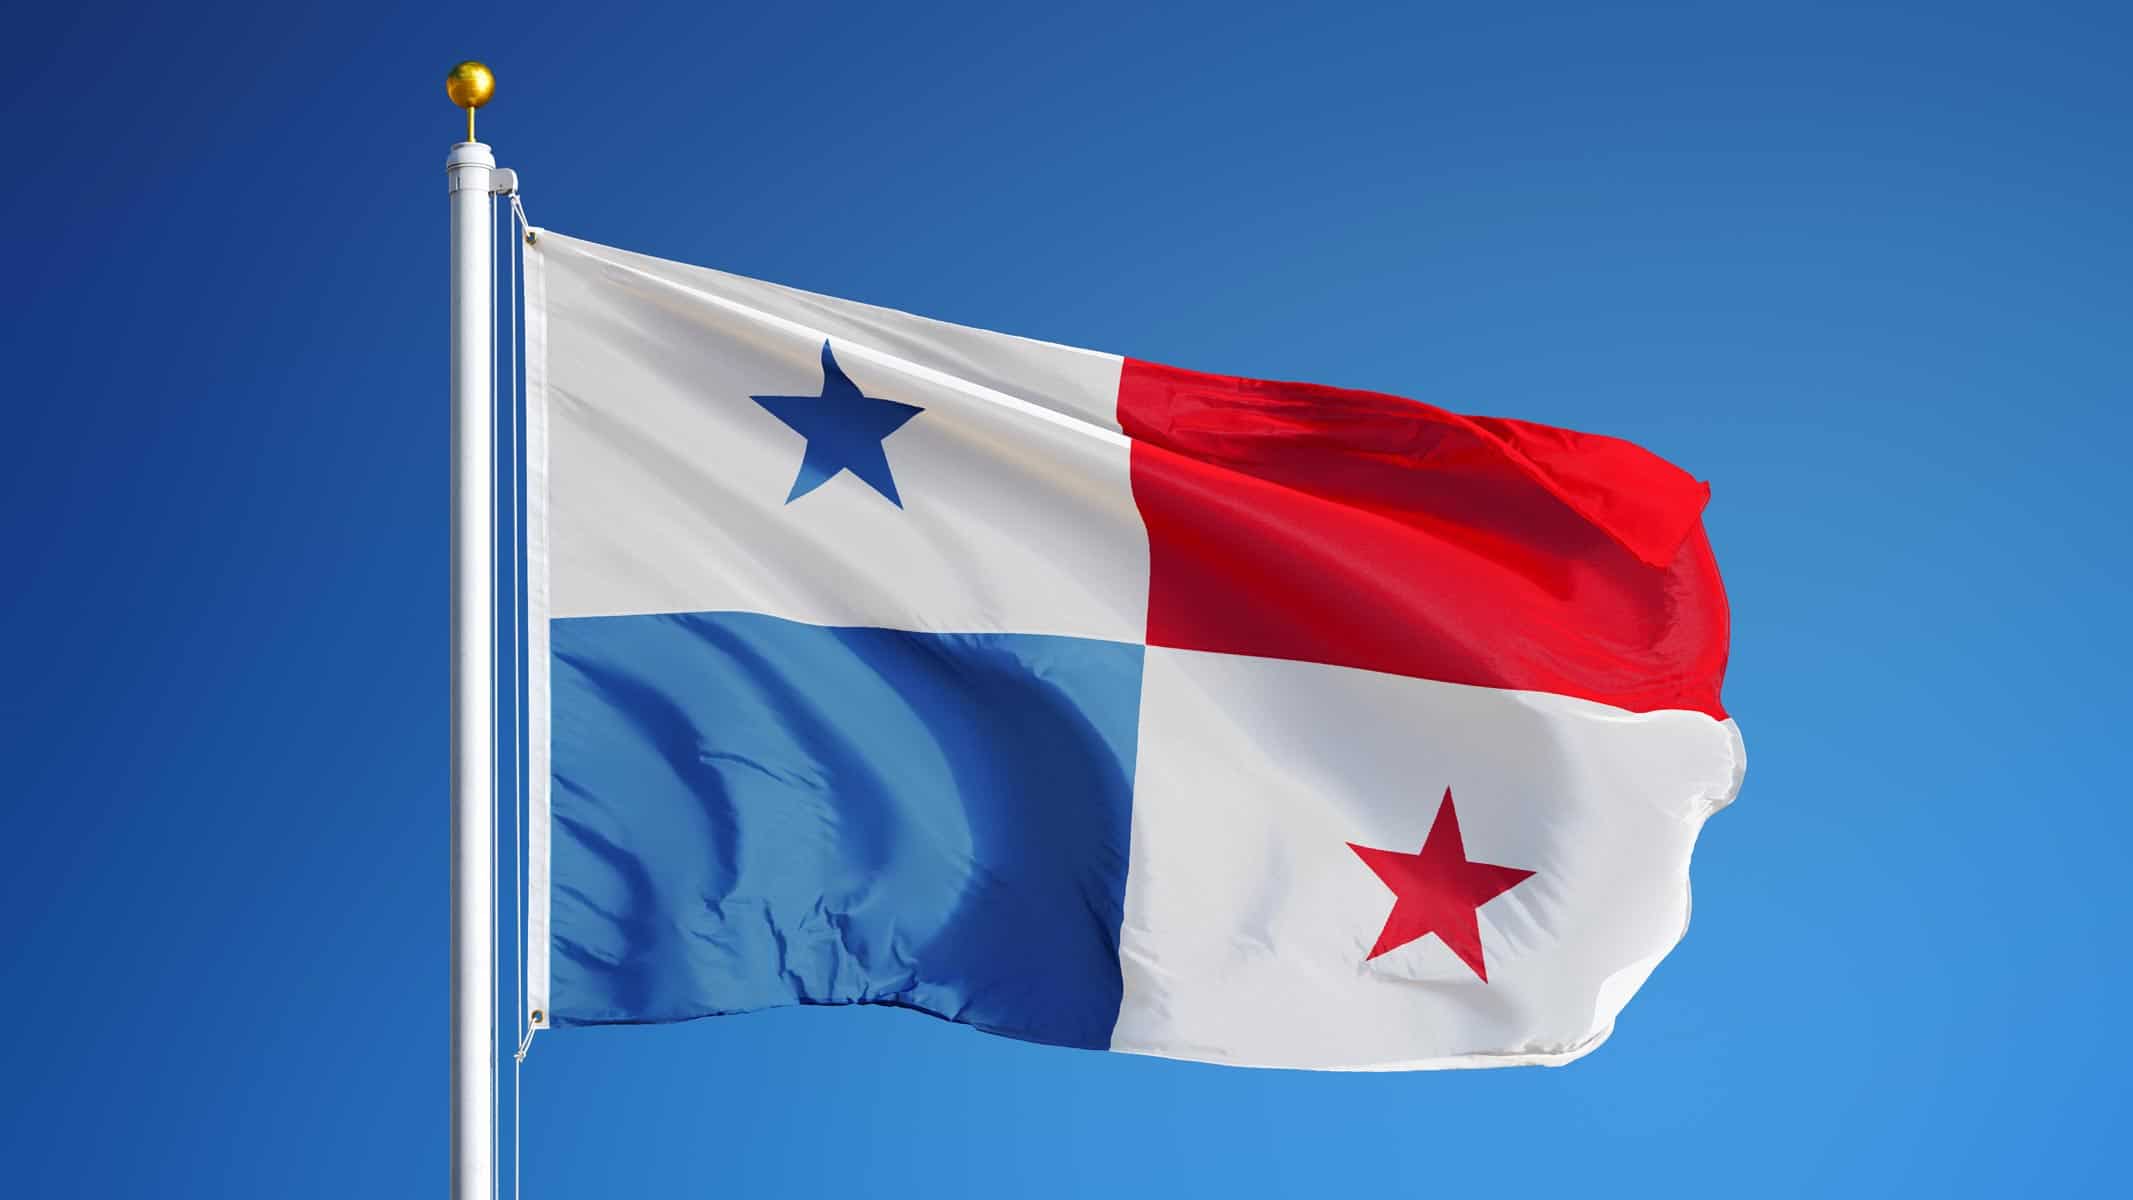 Diplomáticos de la Embajada de Panamá Entregan Donativo Humanitario a Cuba